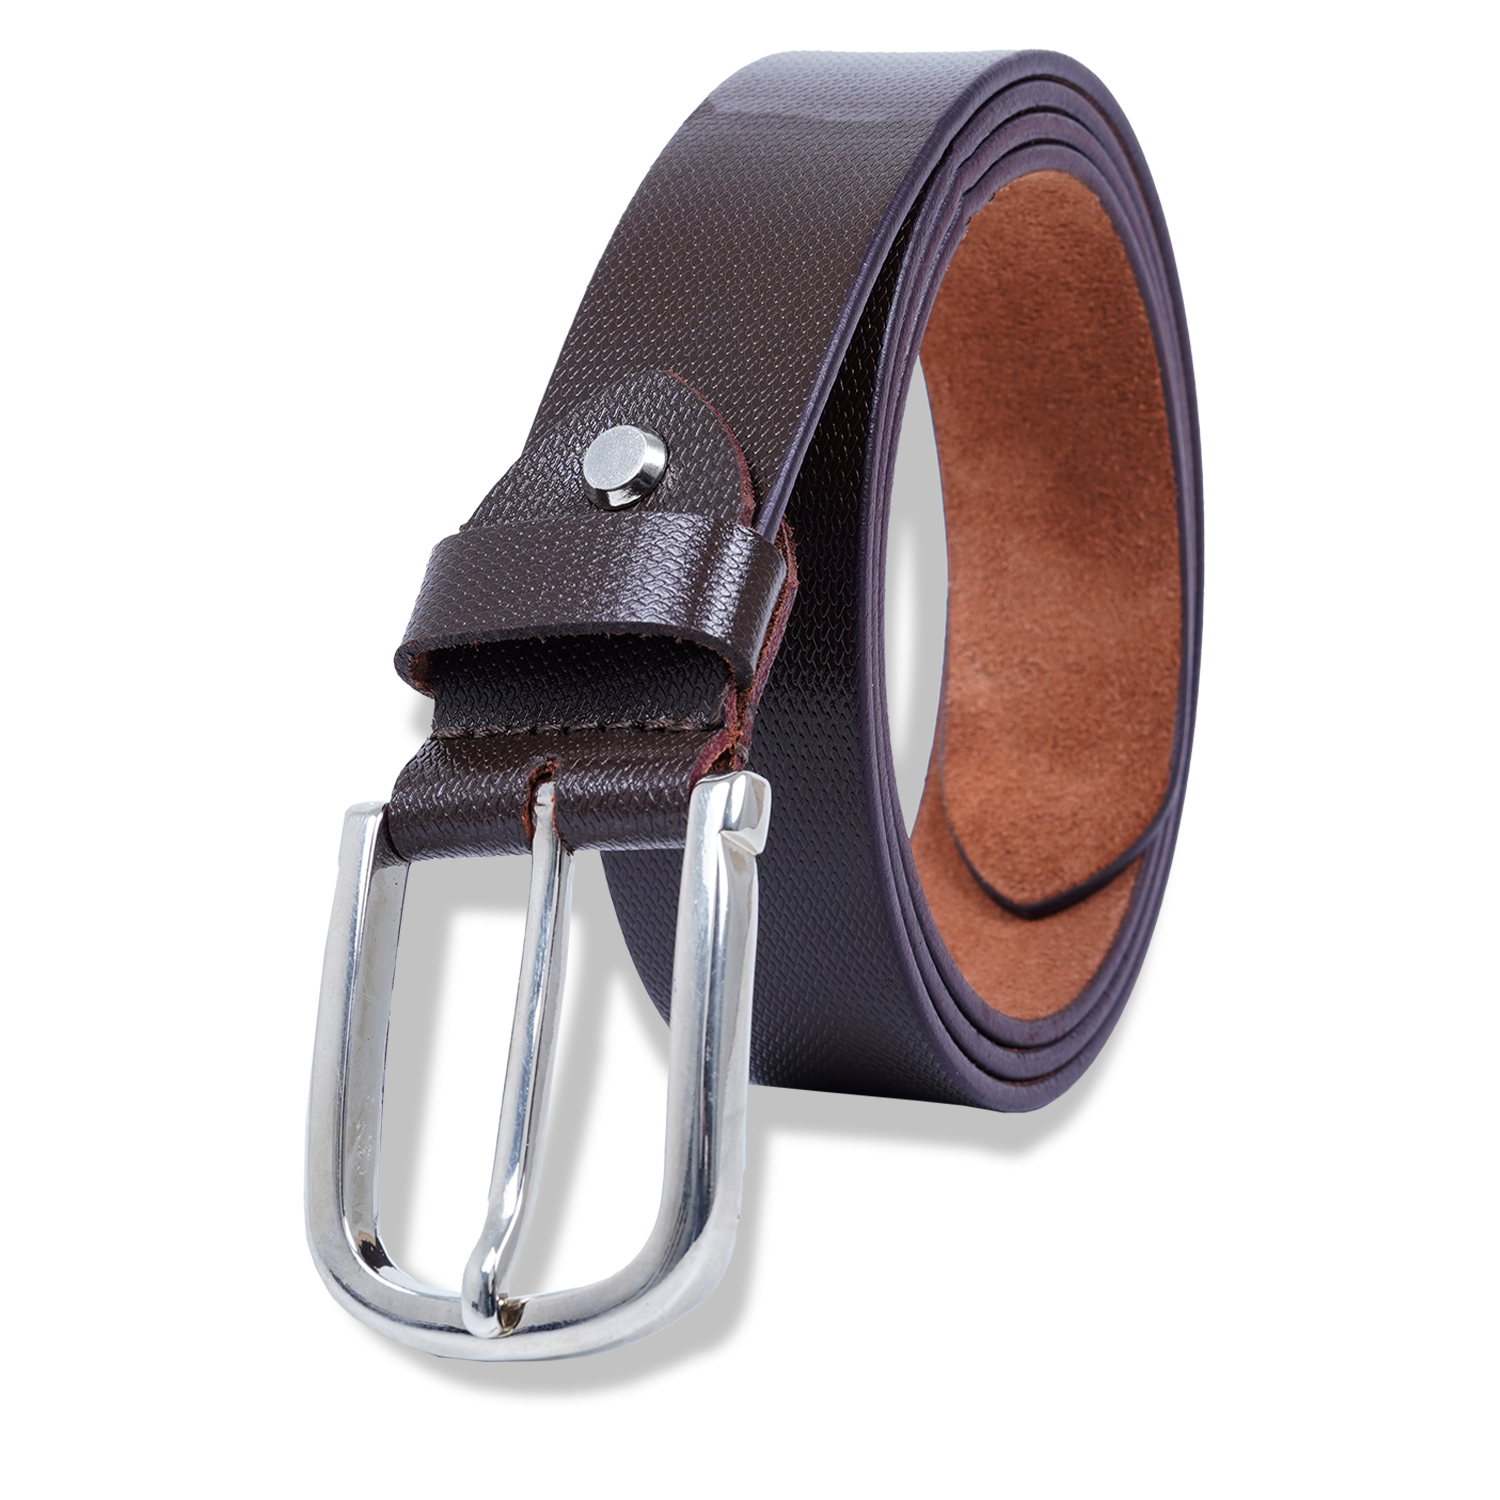  Genuine Leather Belt for Men |Brown| Formal Belt